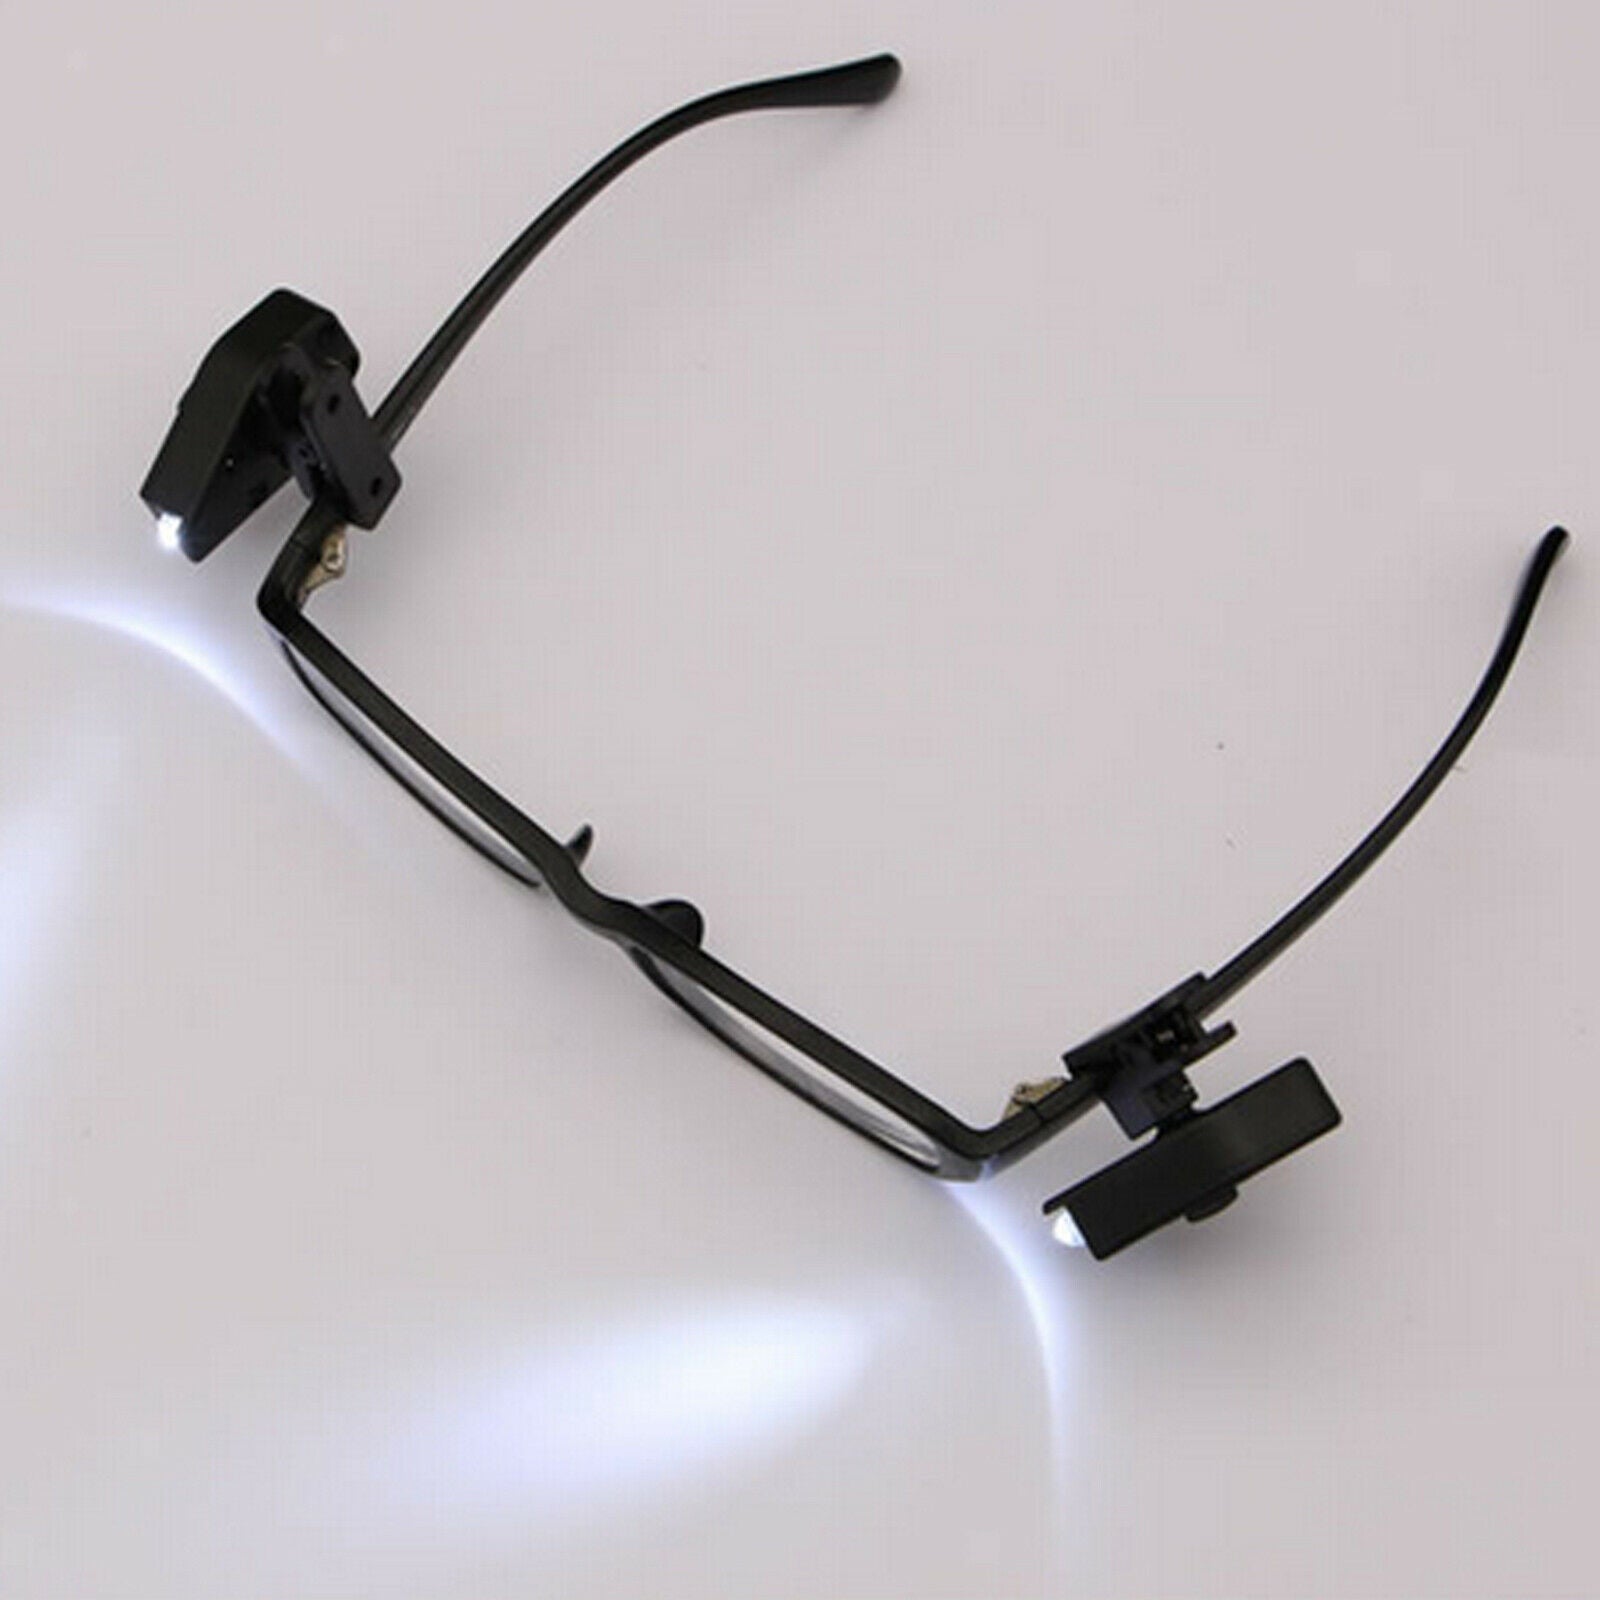 LED glasses clip on book reading light lamp night lights for glasses